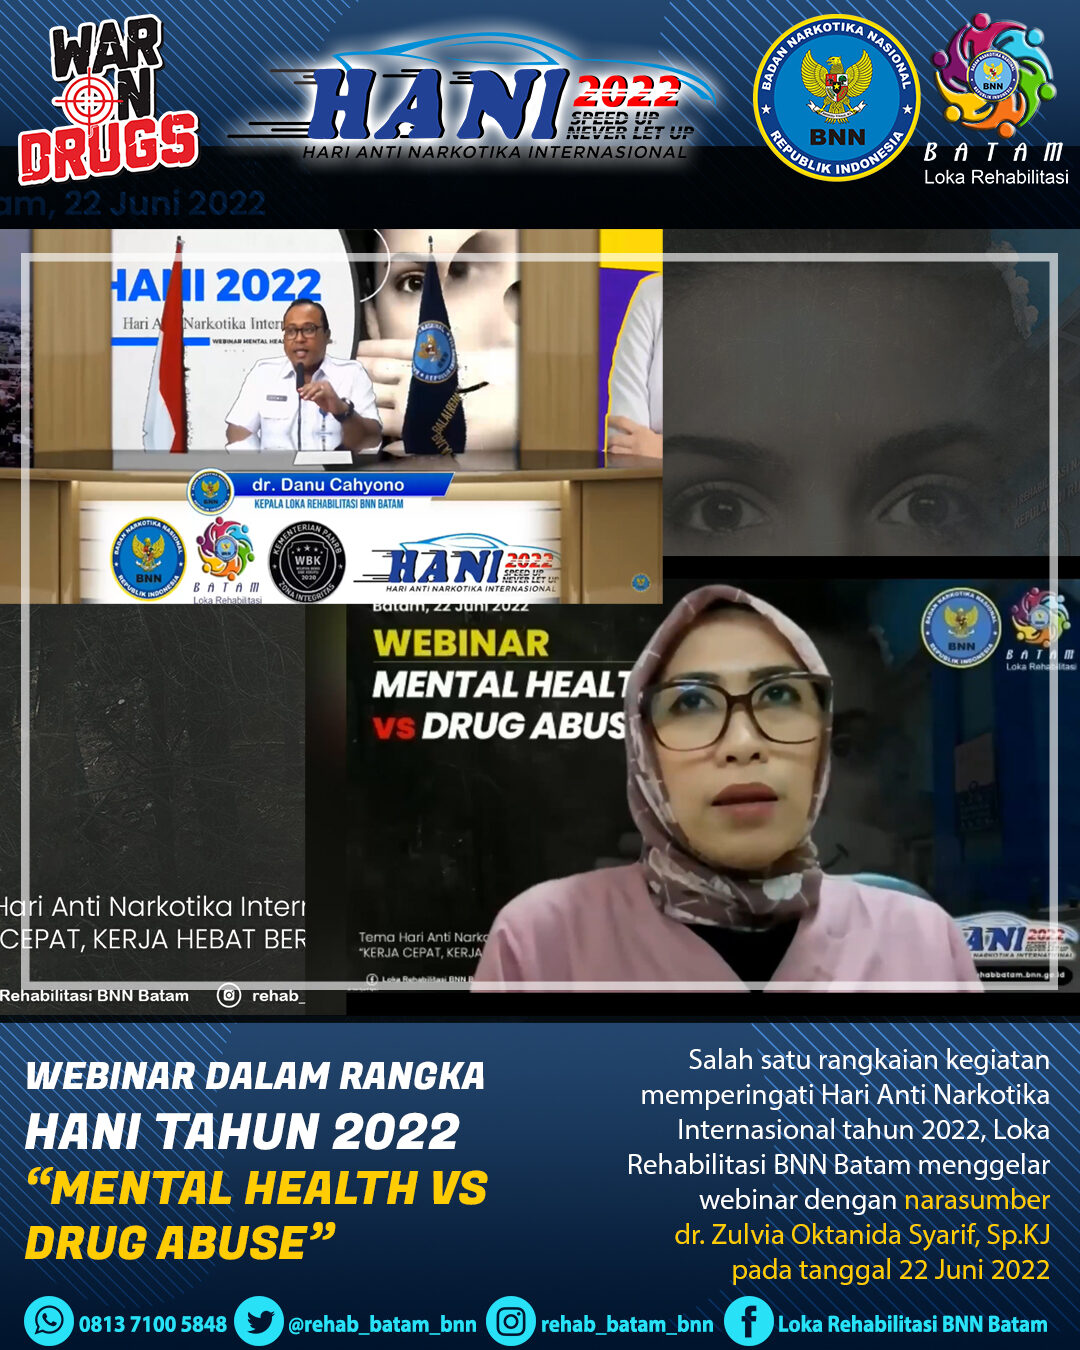 Webinar “Mental Health vs Drug Abuse” Telah Usai Digelar & Diikuti Kurang Lebih 350 Peserta Dari Seluruh Indonesia